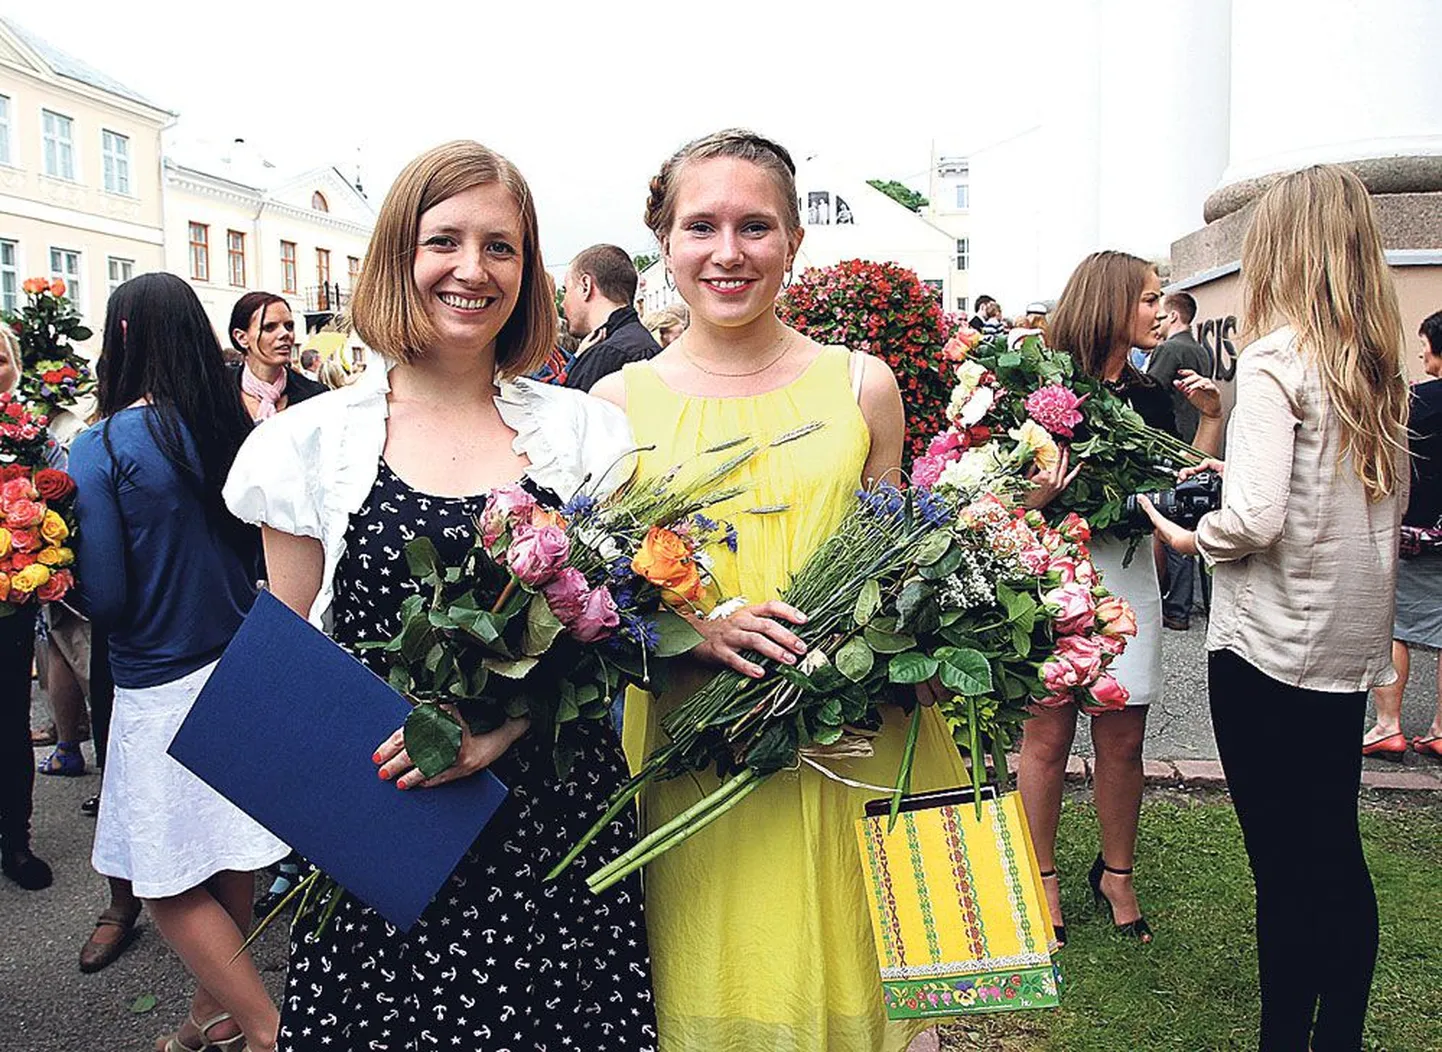 Tartu ülikooli ühiskonnateaduste instituudi ajakirjanduse magistriõppe lõpetasid Tartu Postimehe reporter Katre Tatrik (vasakul) ja endine spordireporter Marii Kangur (paremal).